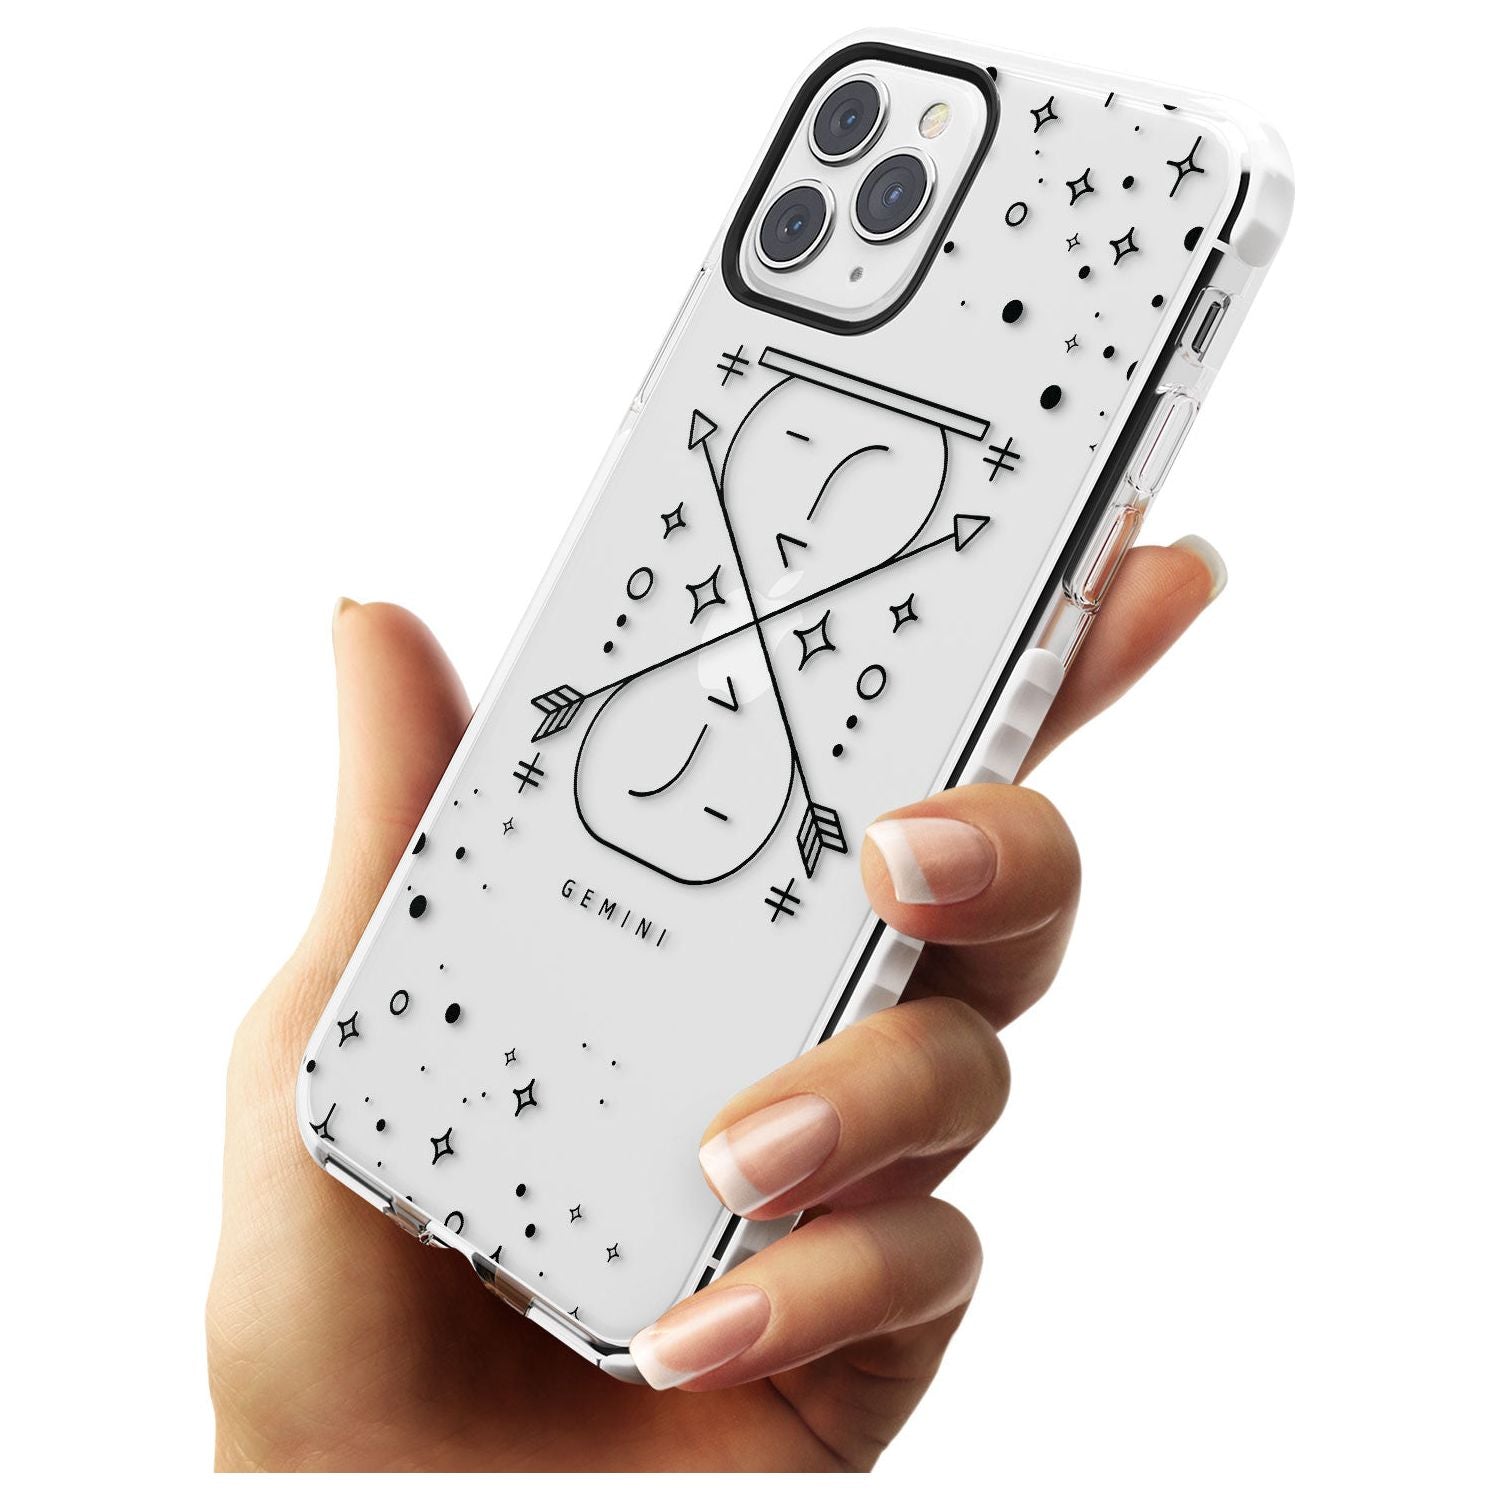 Gemini Emblem - Transparent Design Impact Phone Case for iPhone 11 Pro Max